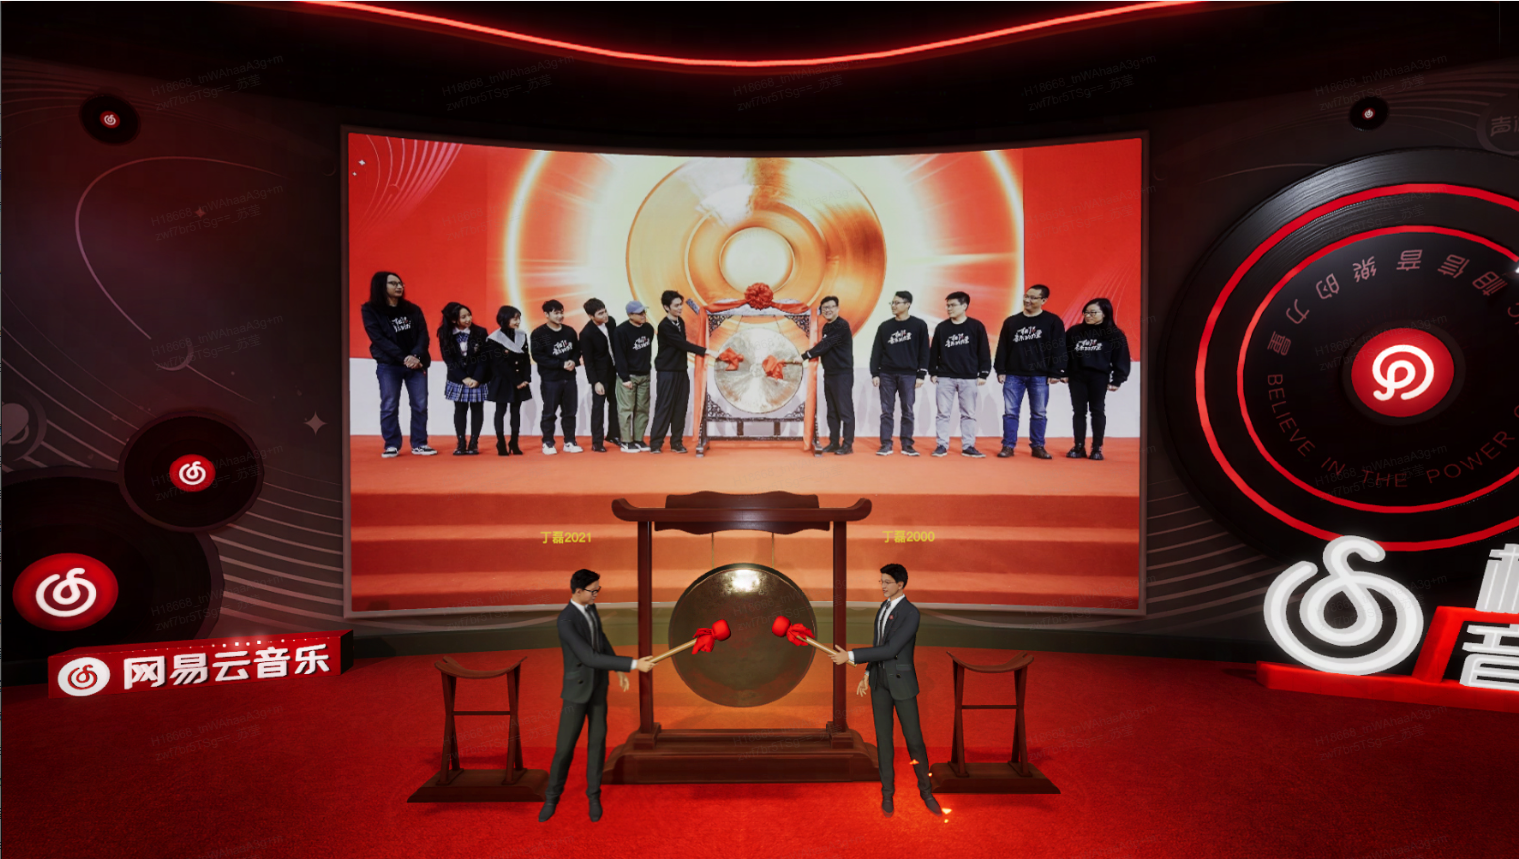 图片是一场活动的现场，两位男士站在台前，背景是大屏幕显示着一群人和中式鼓，周围有中国风元素和标识。